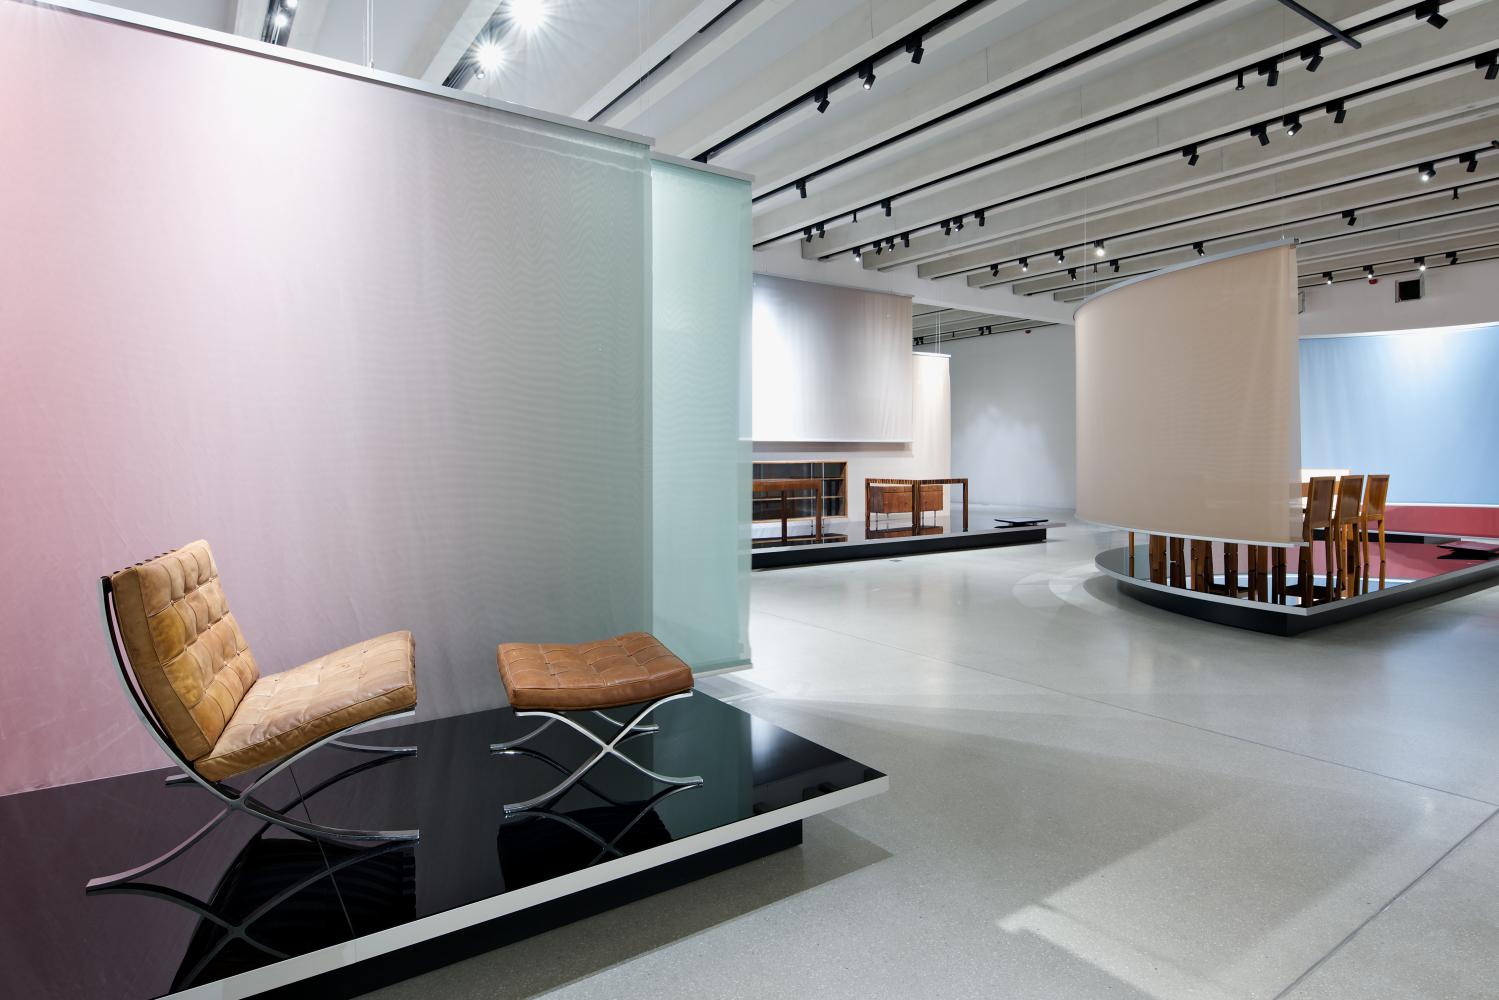 Ensemble von Mies van der Rohe im neuen Bauhaus-Museum Weimar 